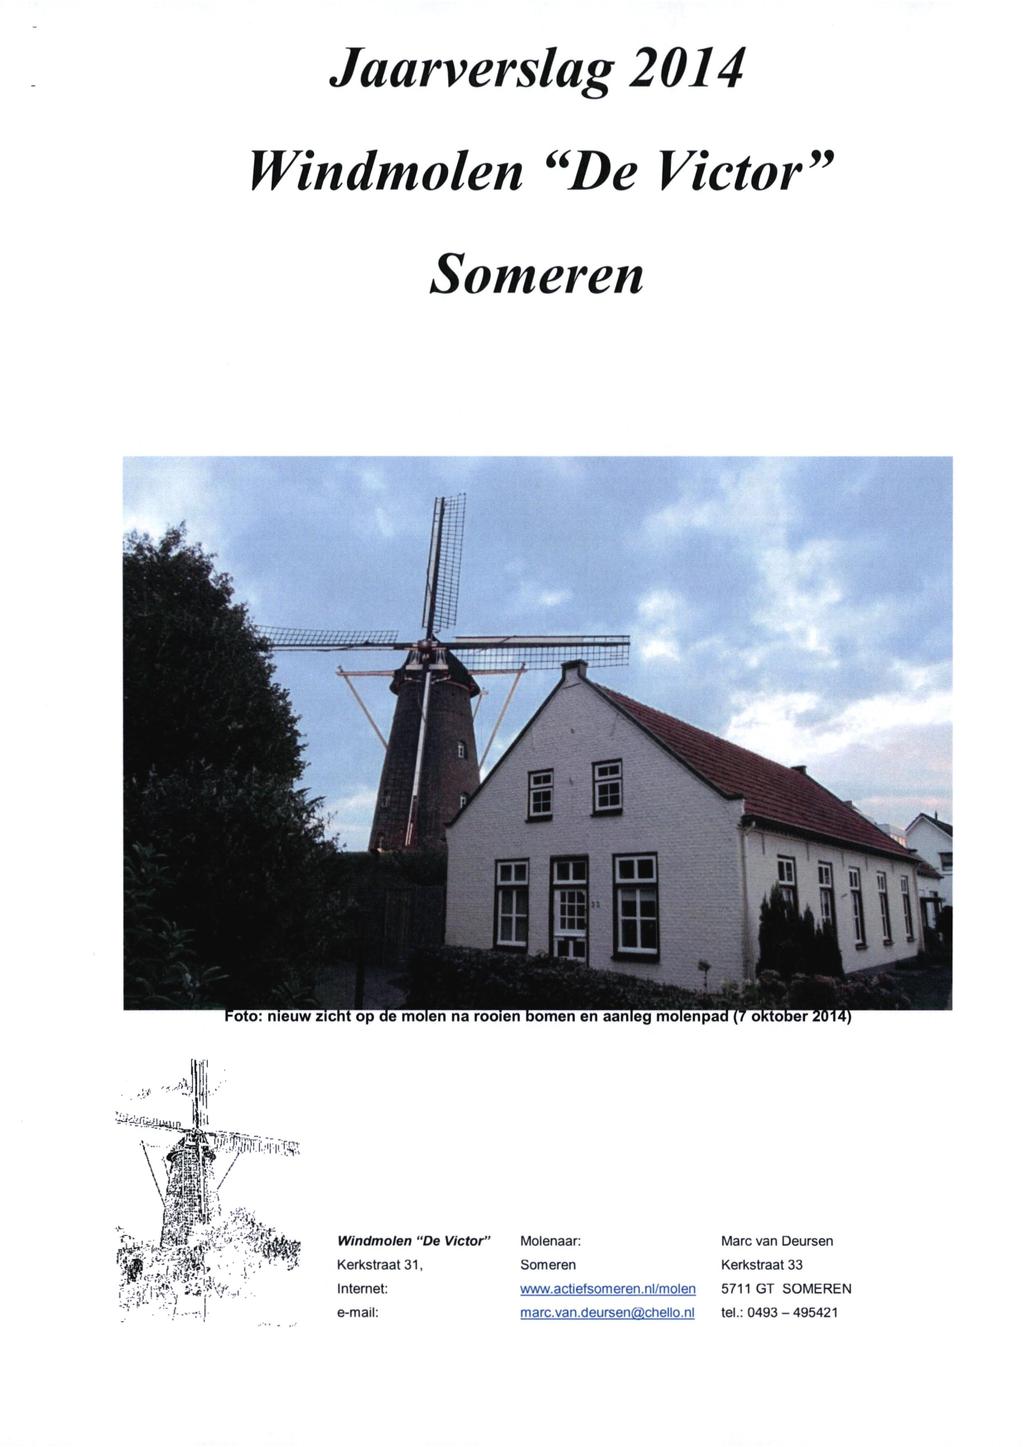 Jaarverslag 2014 Windmolen **De Victor** Someren Windmolen "De Victor" Kerkstraat 31, Internet: e-mail: Molenaar: